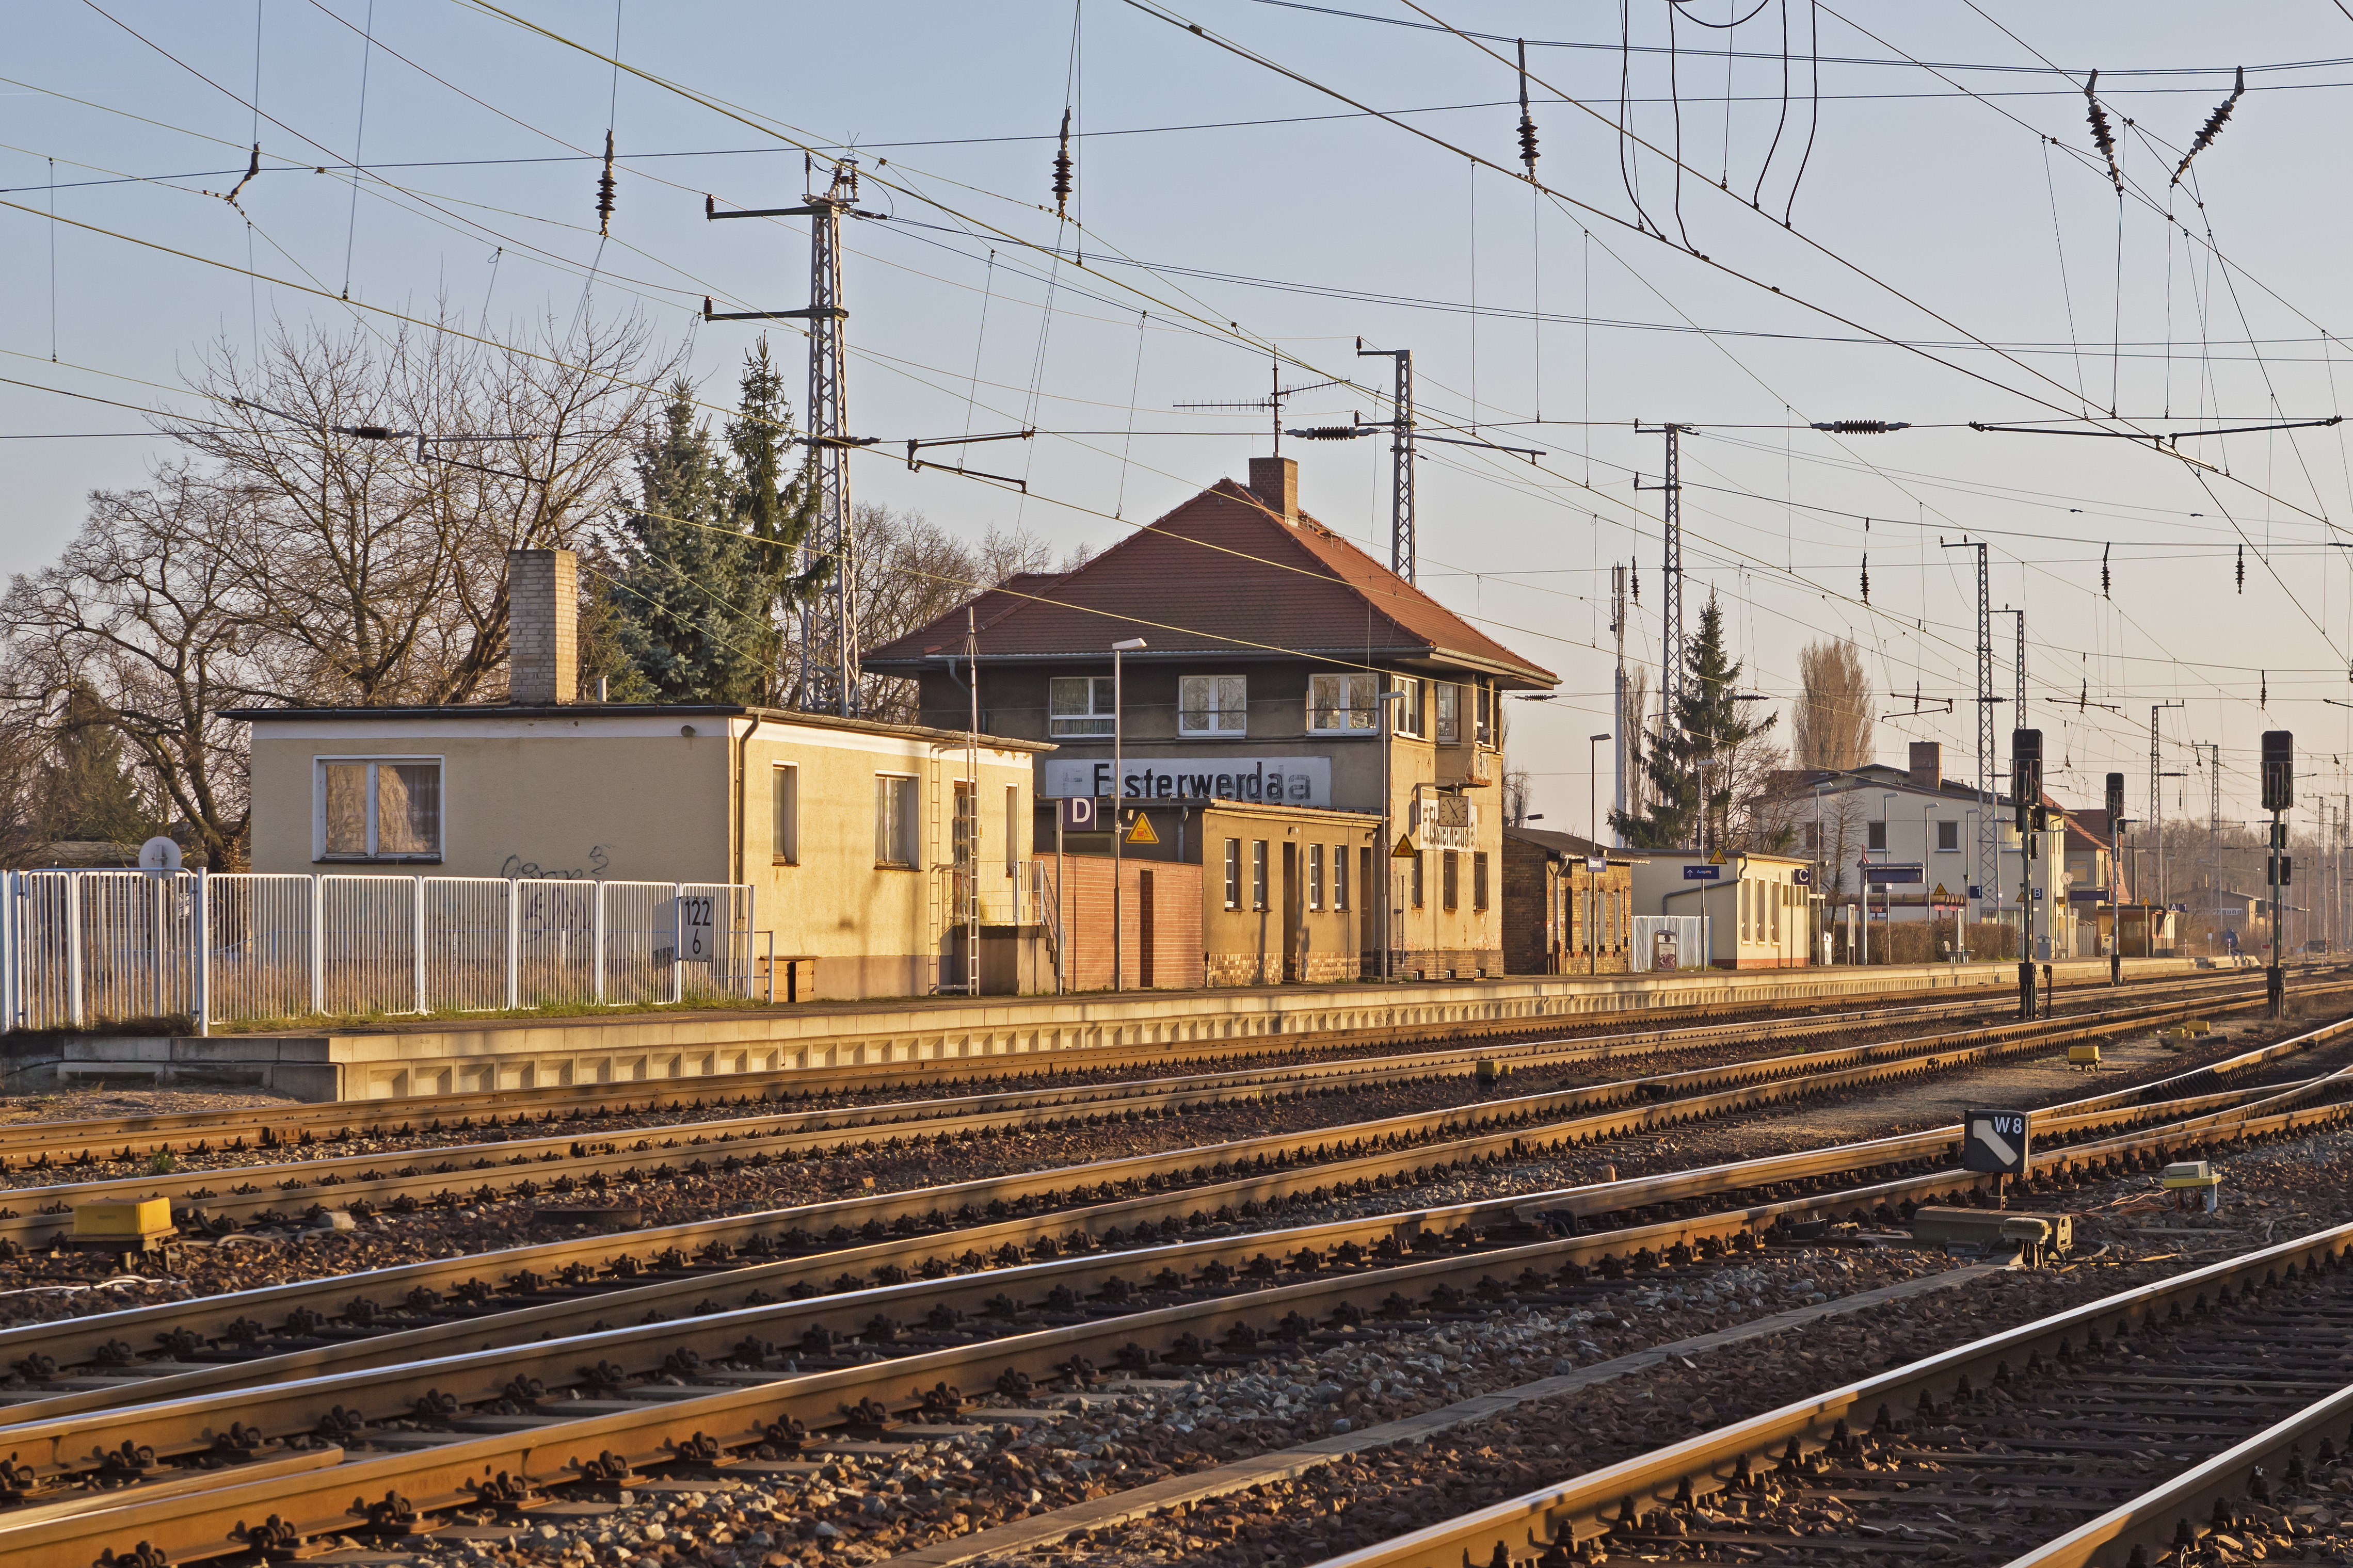 EE 03-14 Img13 Elsterwerda Bahnhof